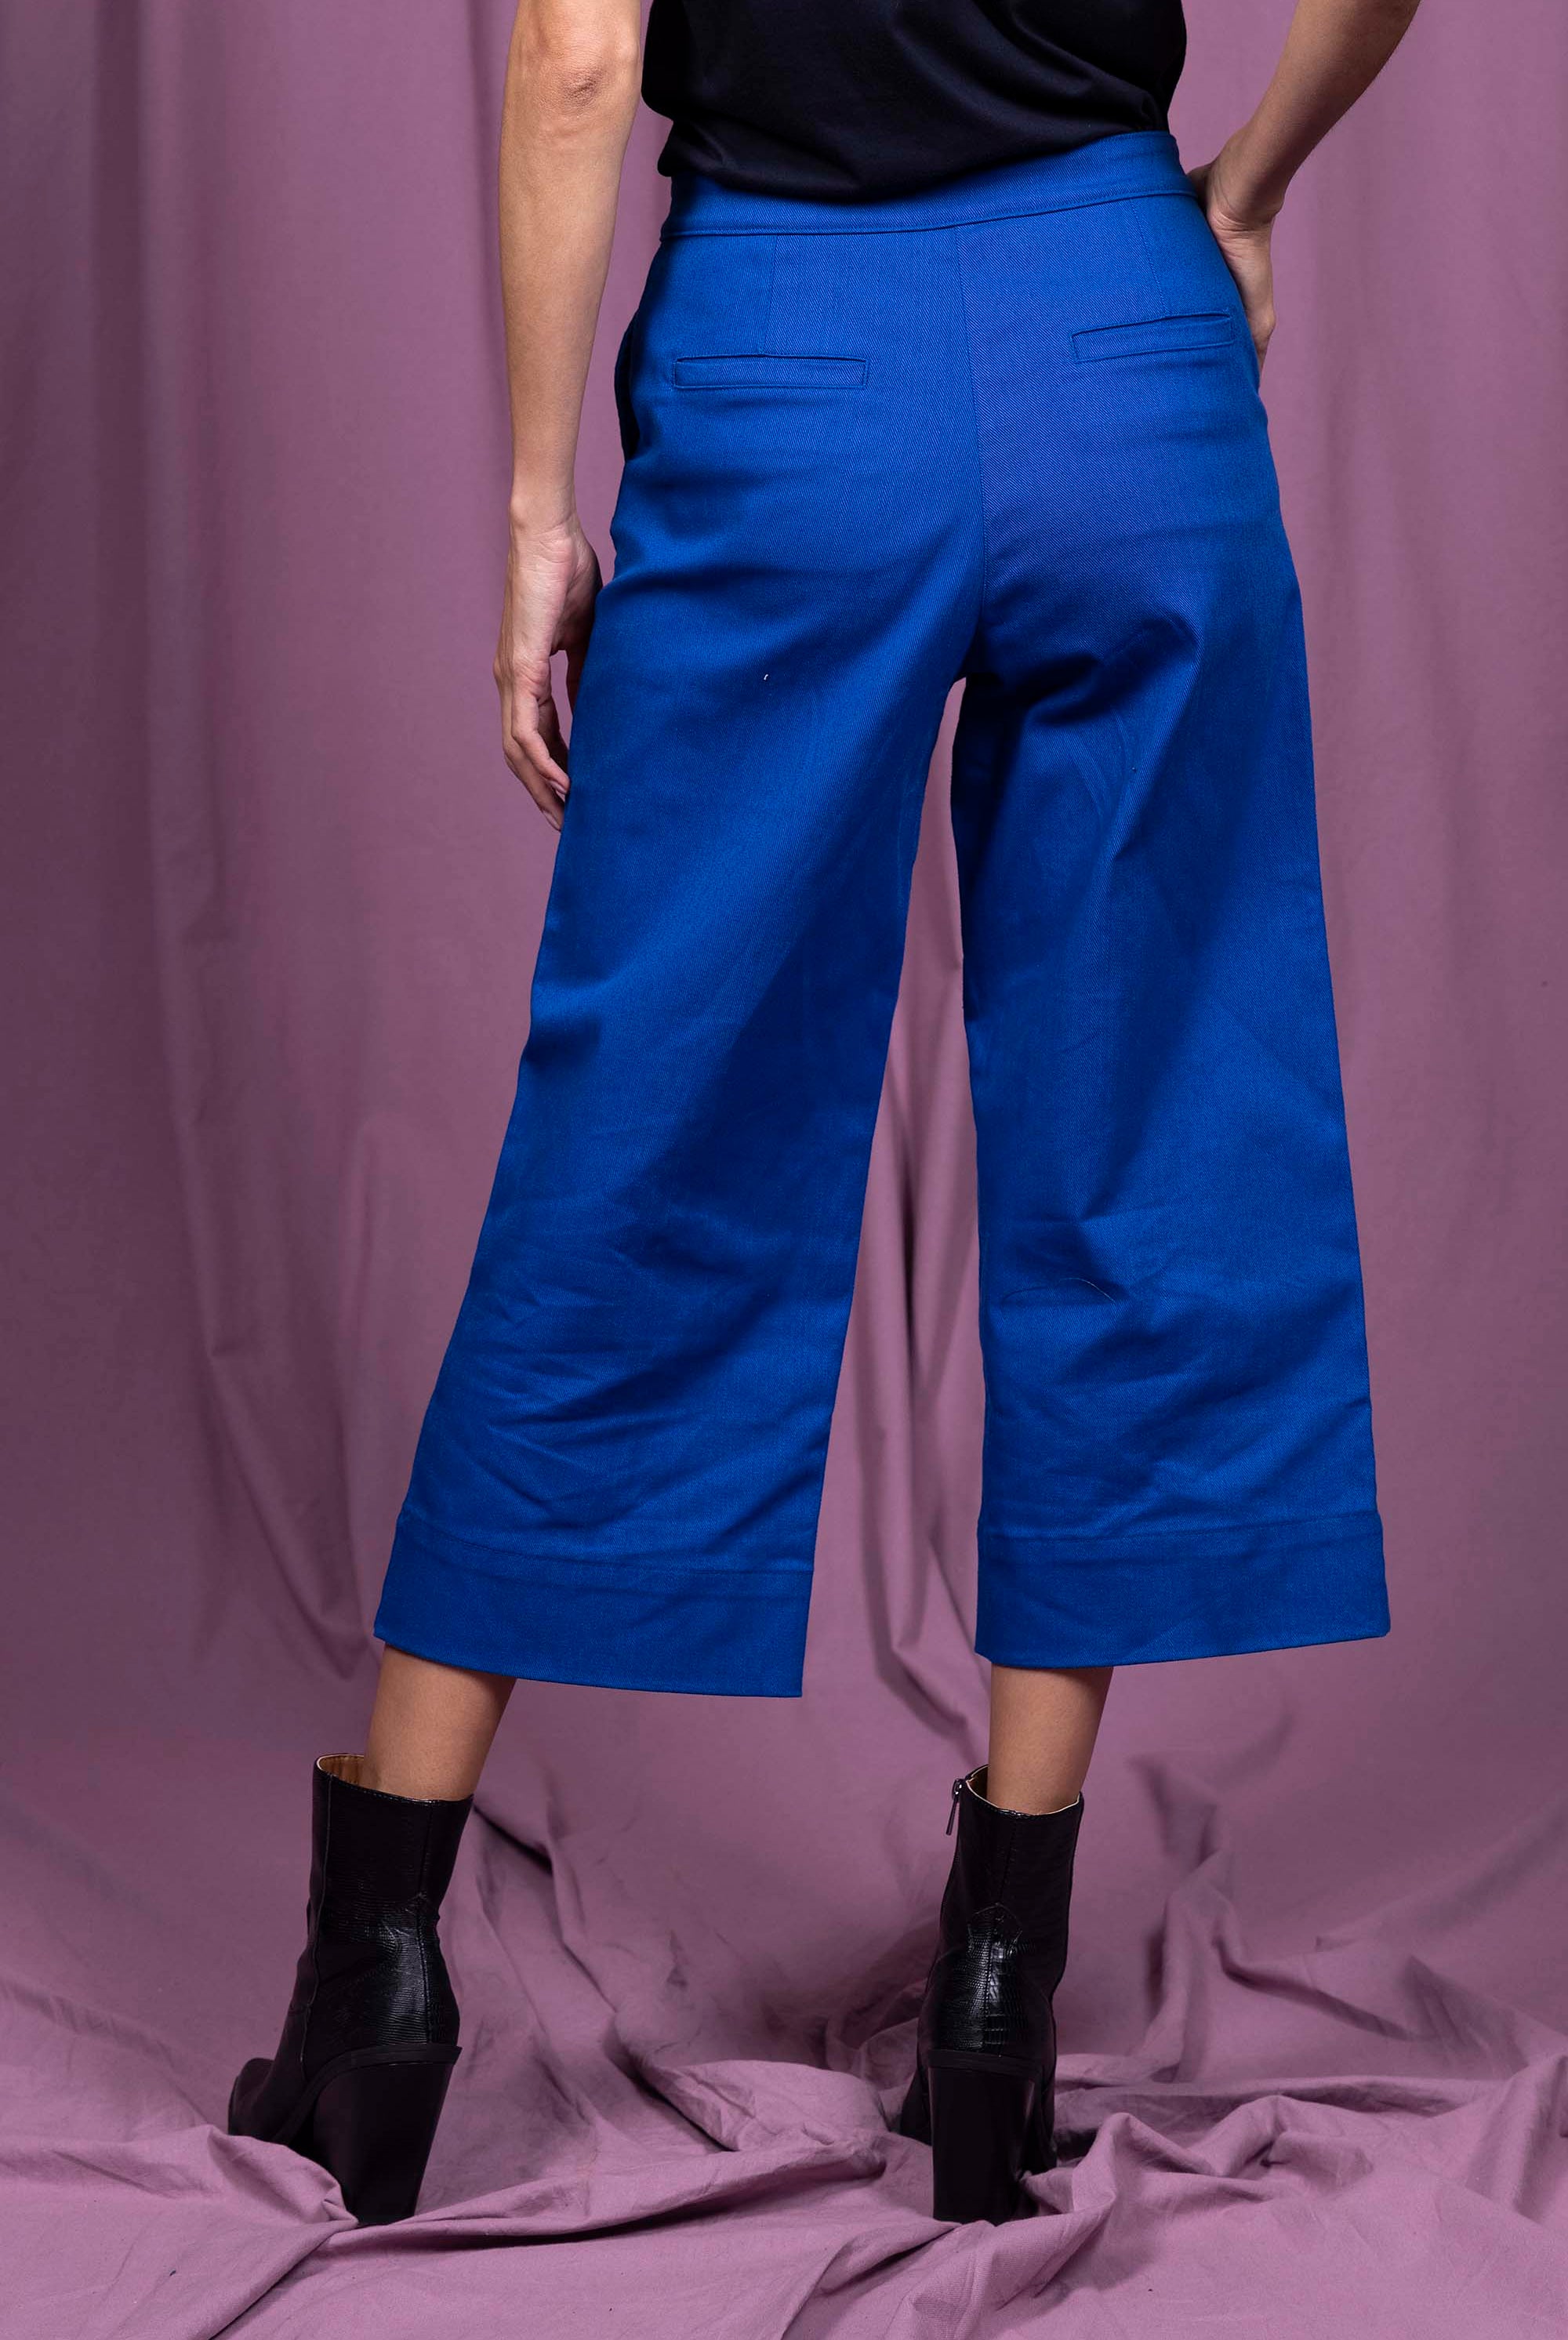 Pantalon Cristina Bleu parfaite alternative aux jeans, les pantalons en coton Misericordia sont uniques et confortables